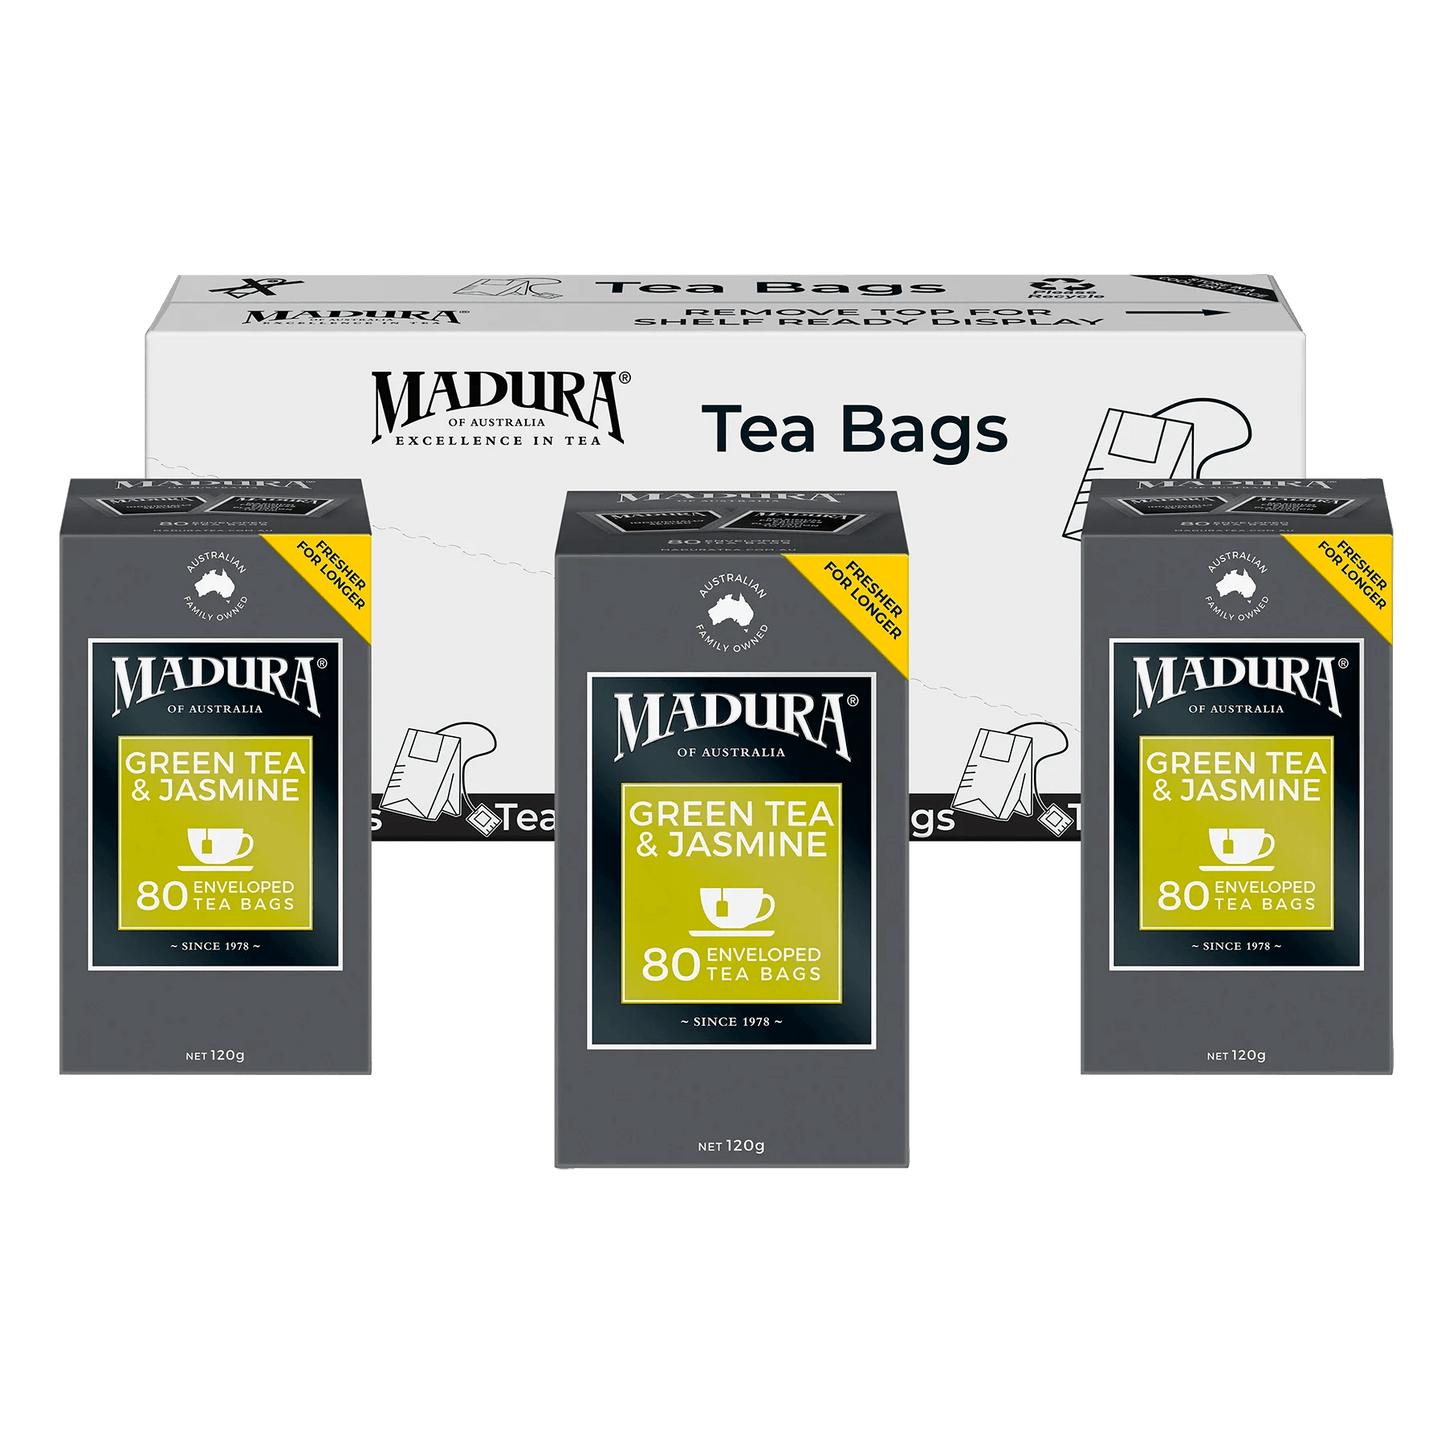 Green Tea & Jasmine 80 Enveloped Tea Bags - Madura Tea